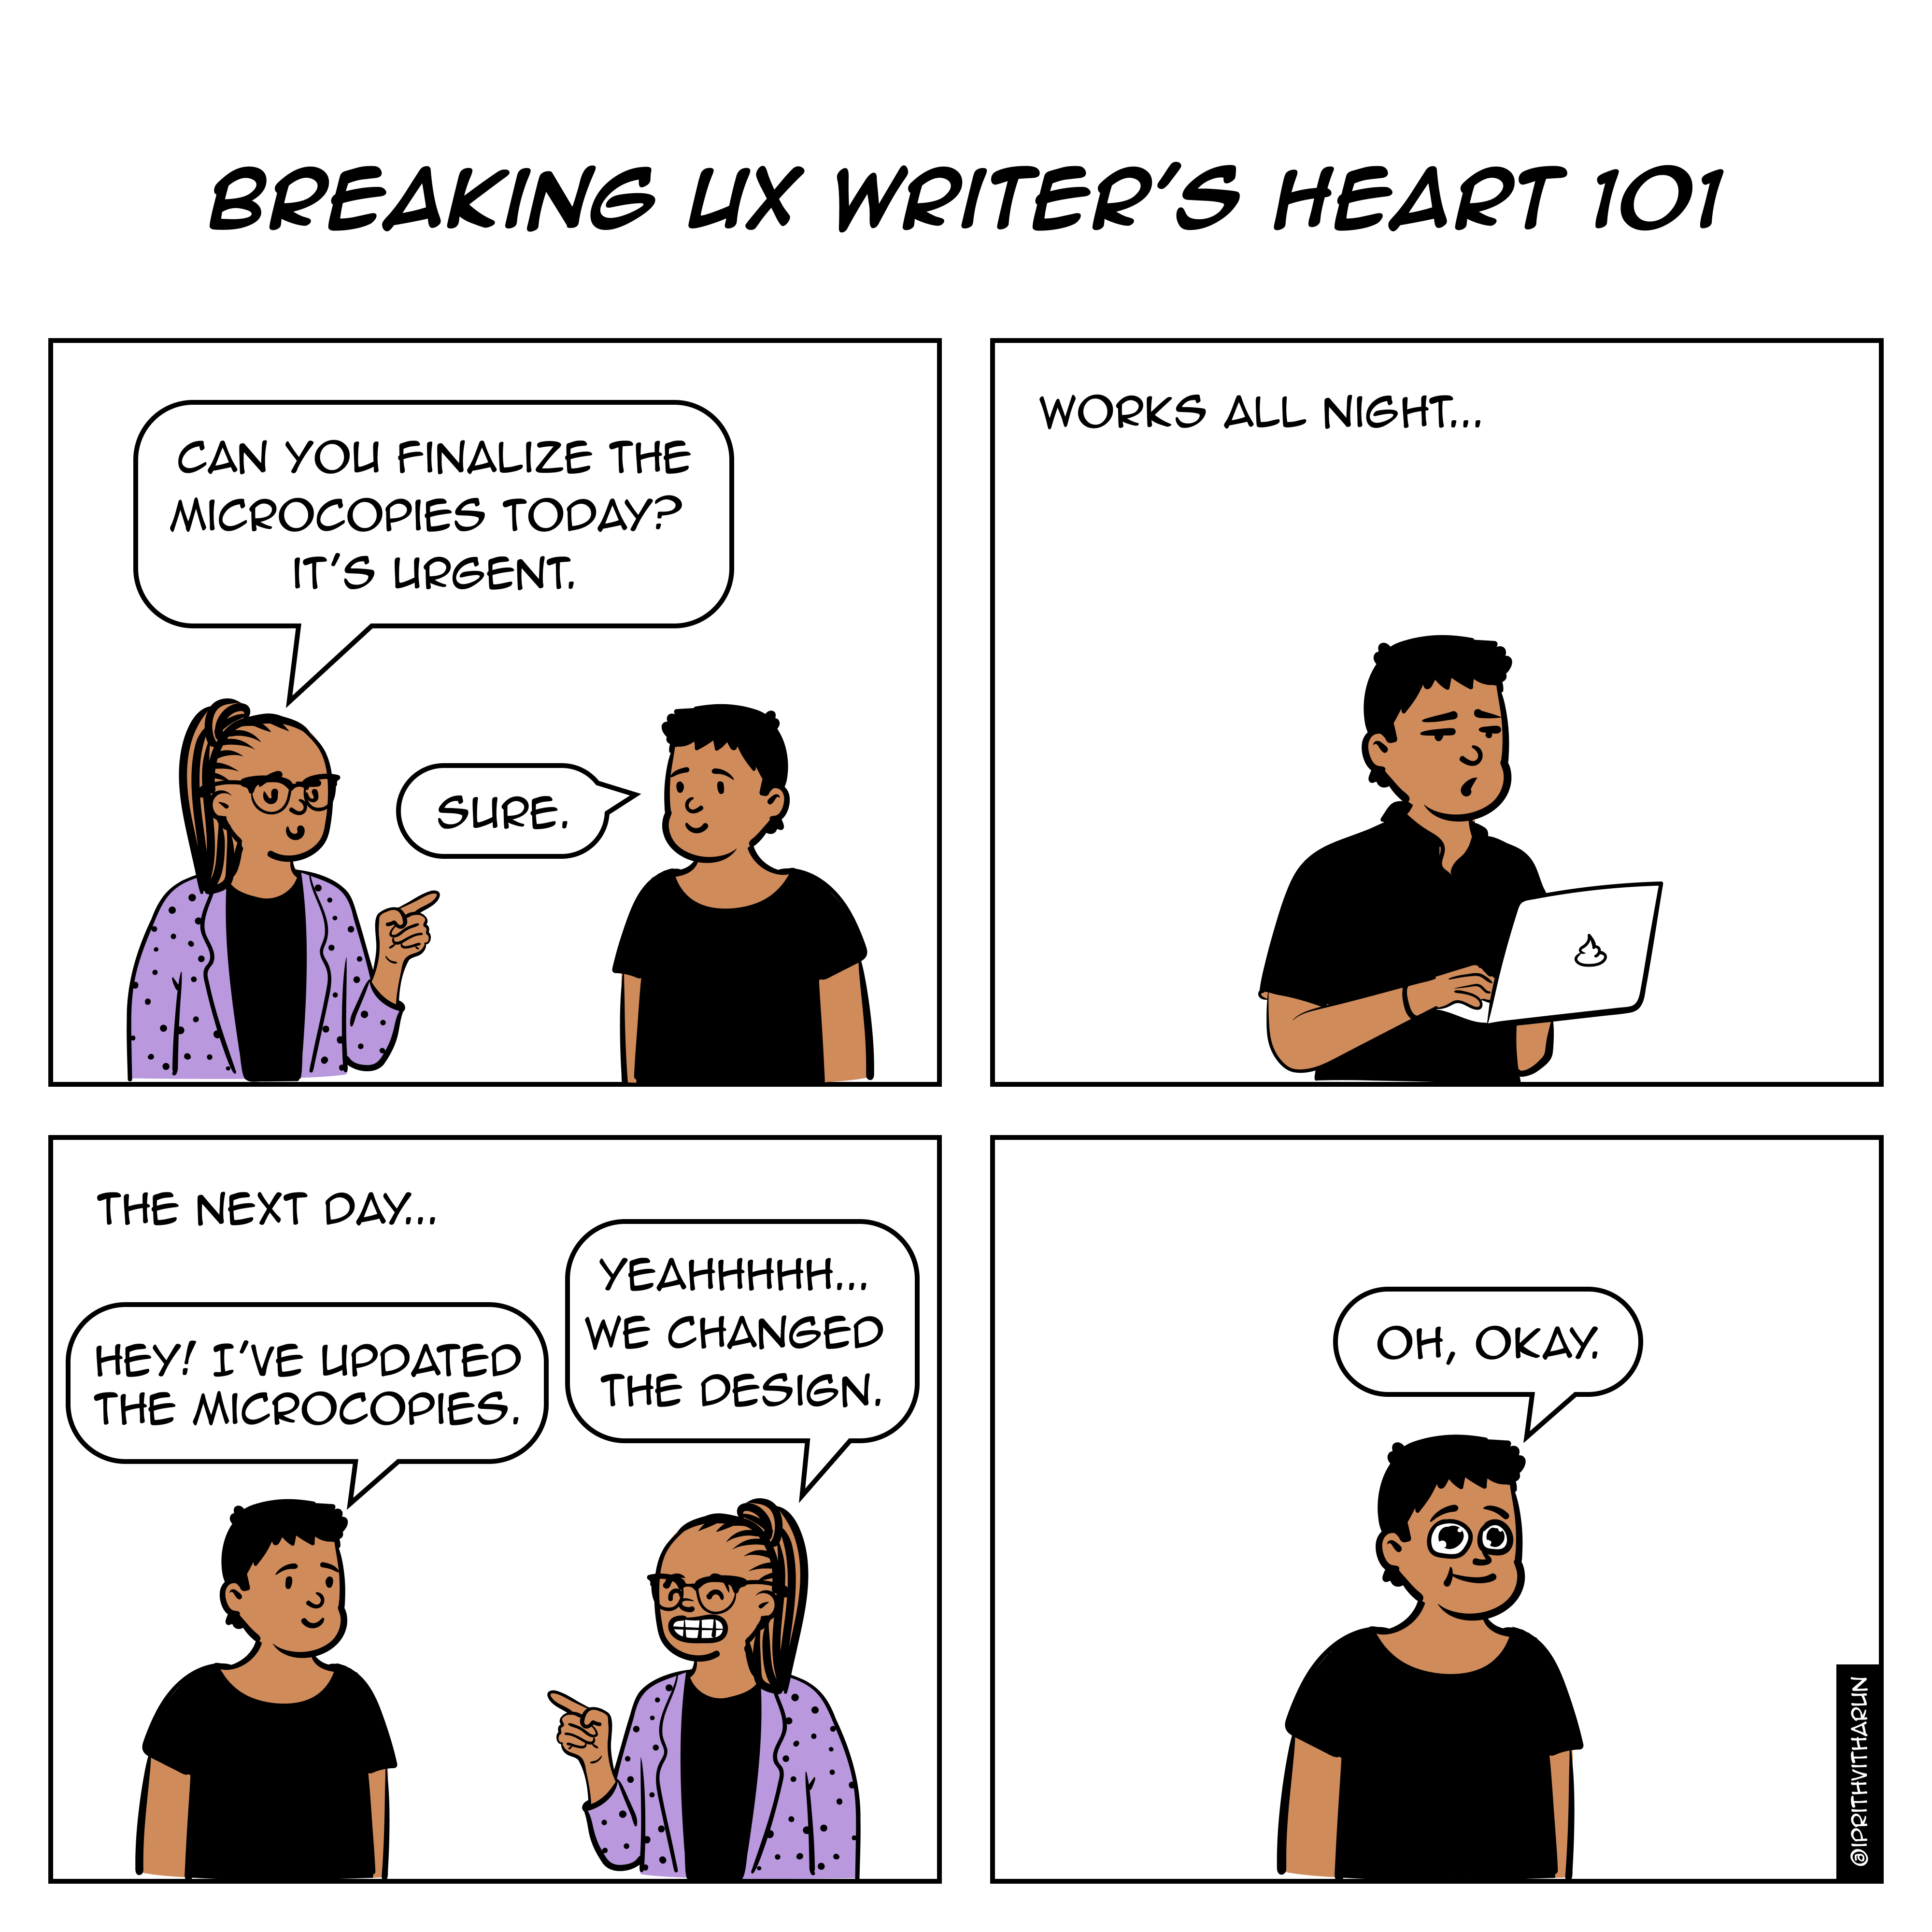 Breaking UX Writer’s heart 101